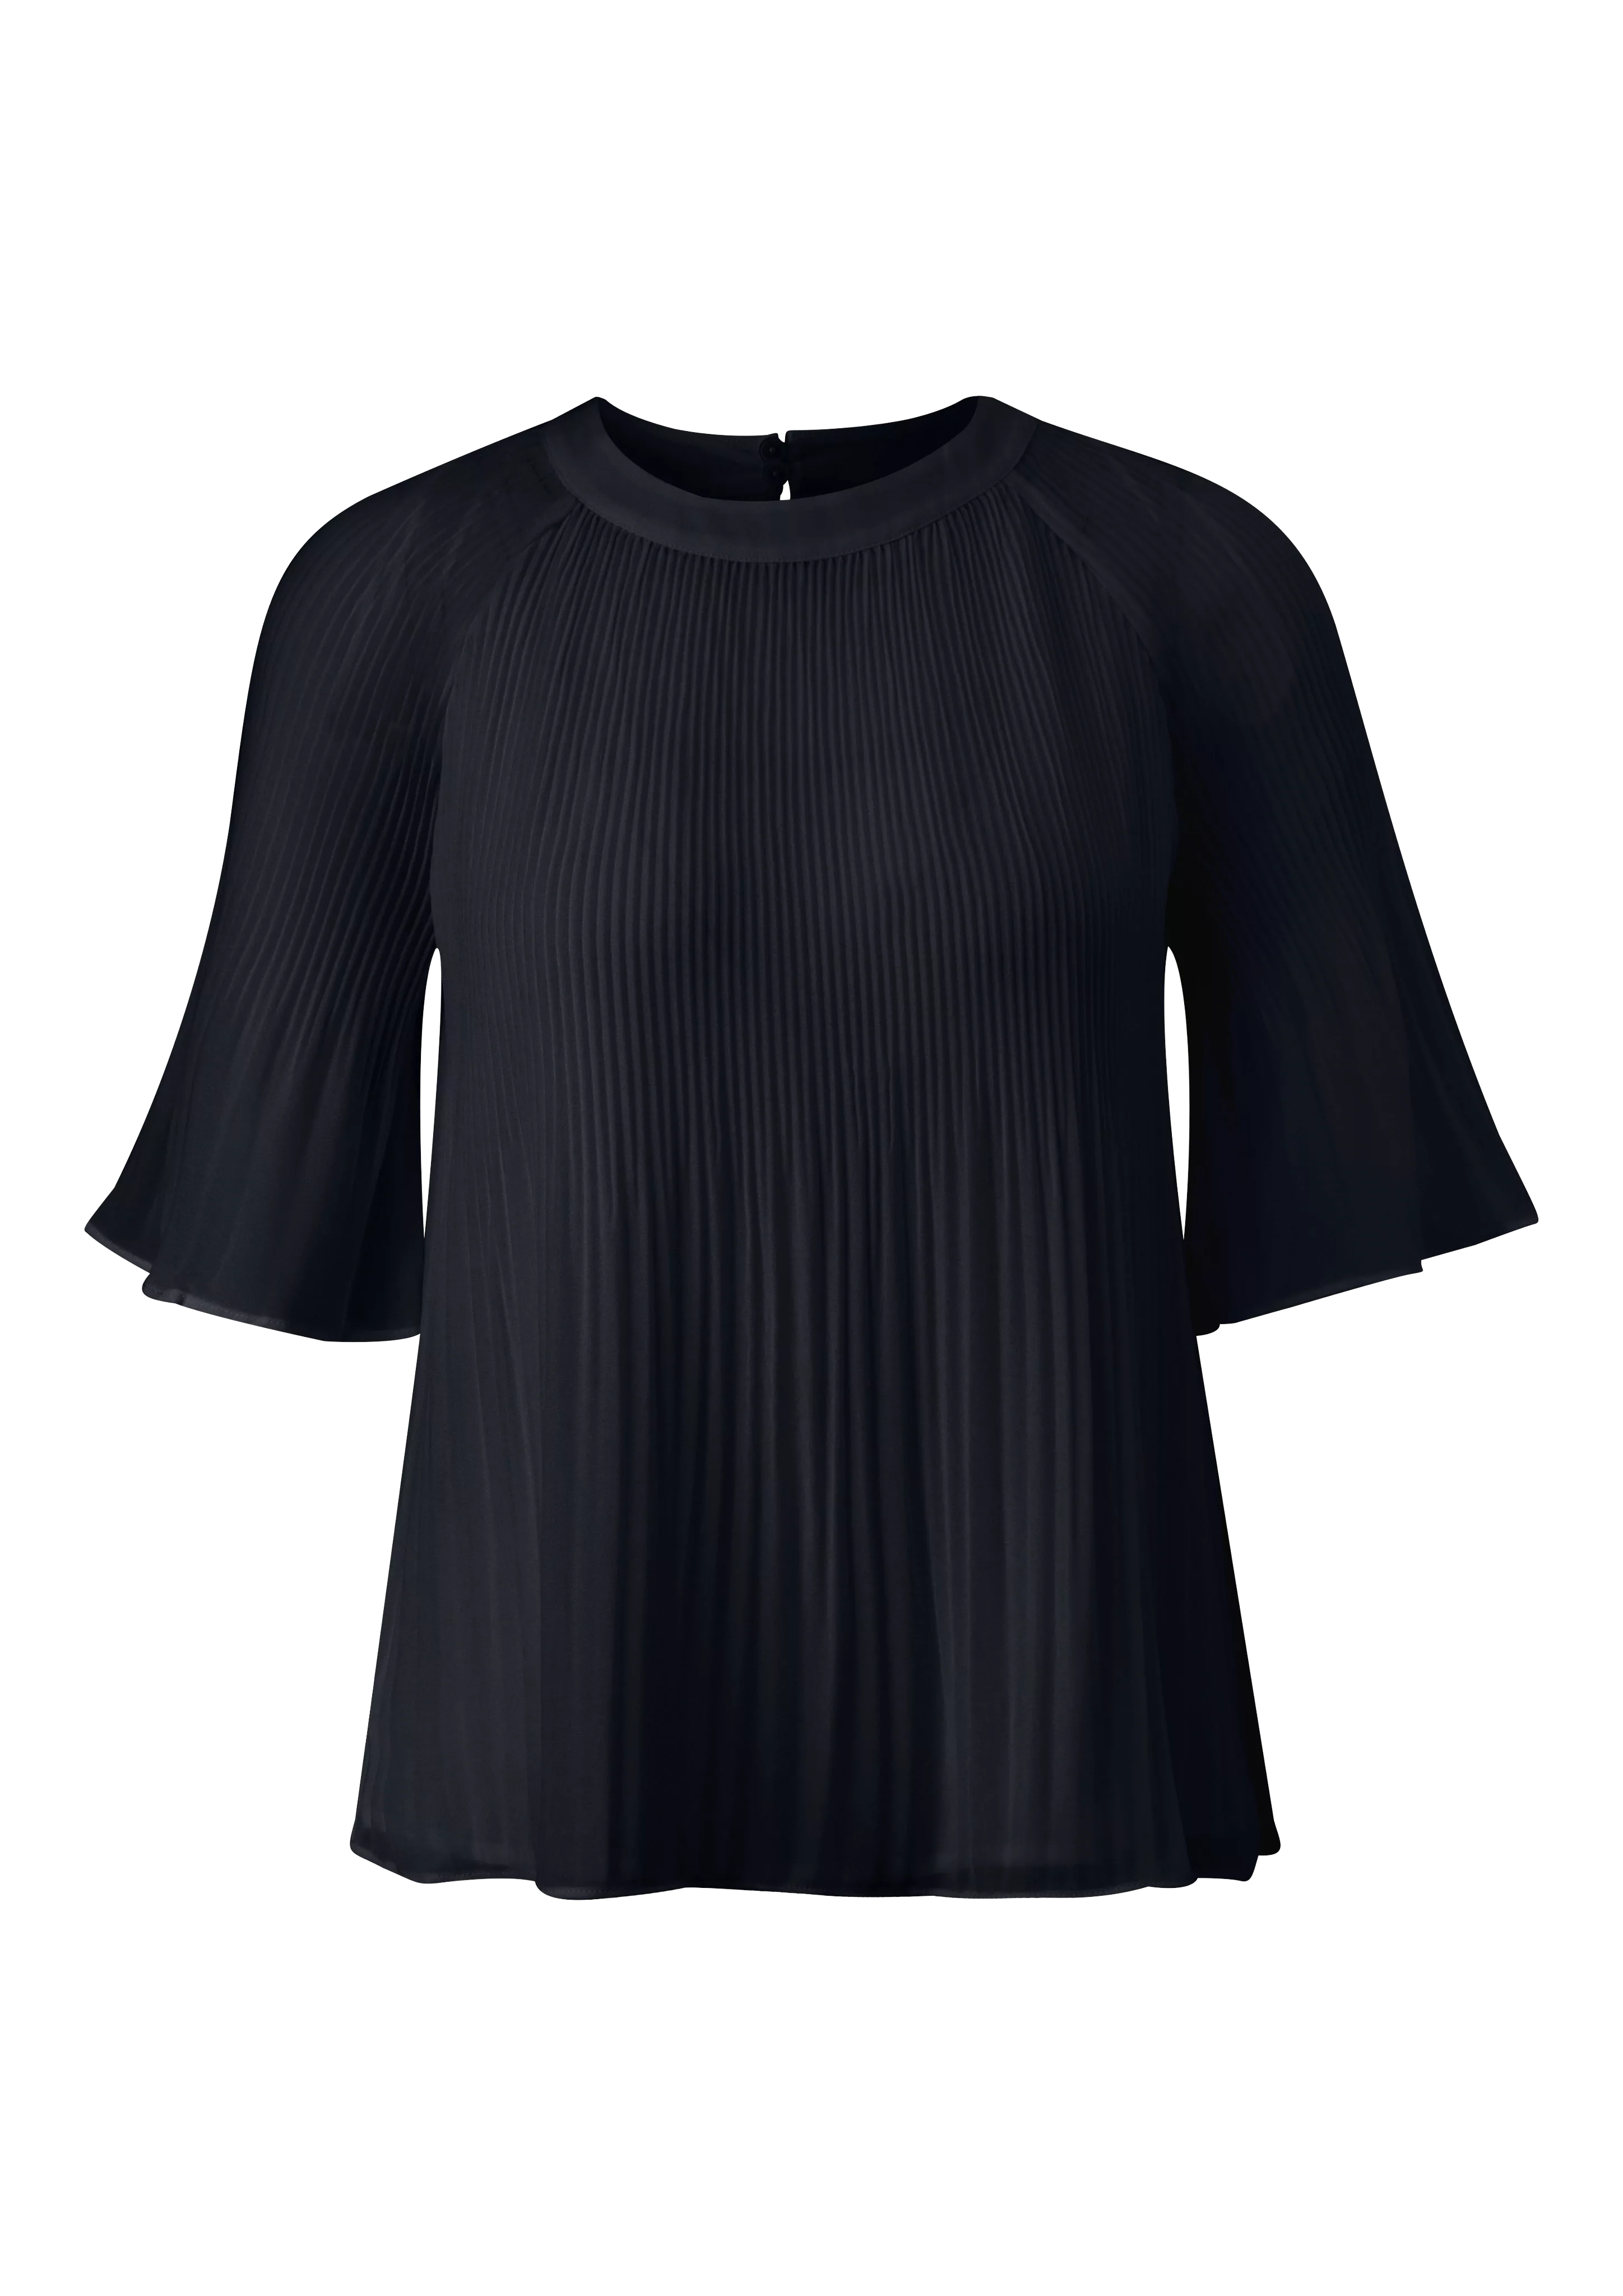 s.Oliver BLACK LABEL Kurzarmbluse - festliche Plissee Bluse - lockere Somme günstig online kaufen